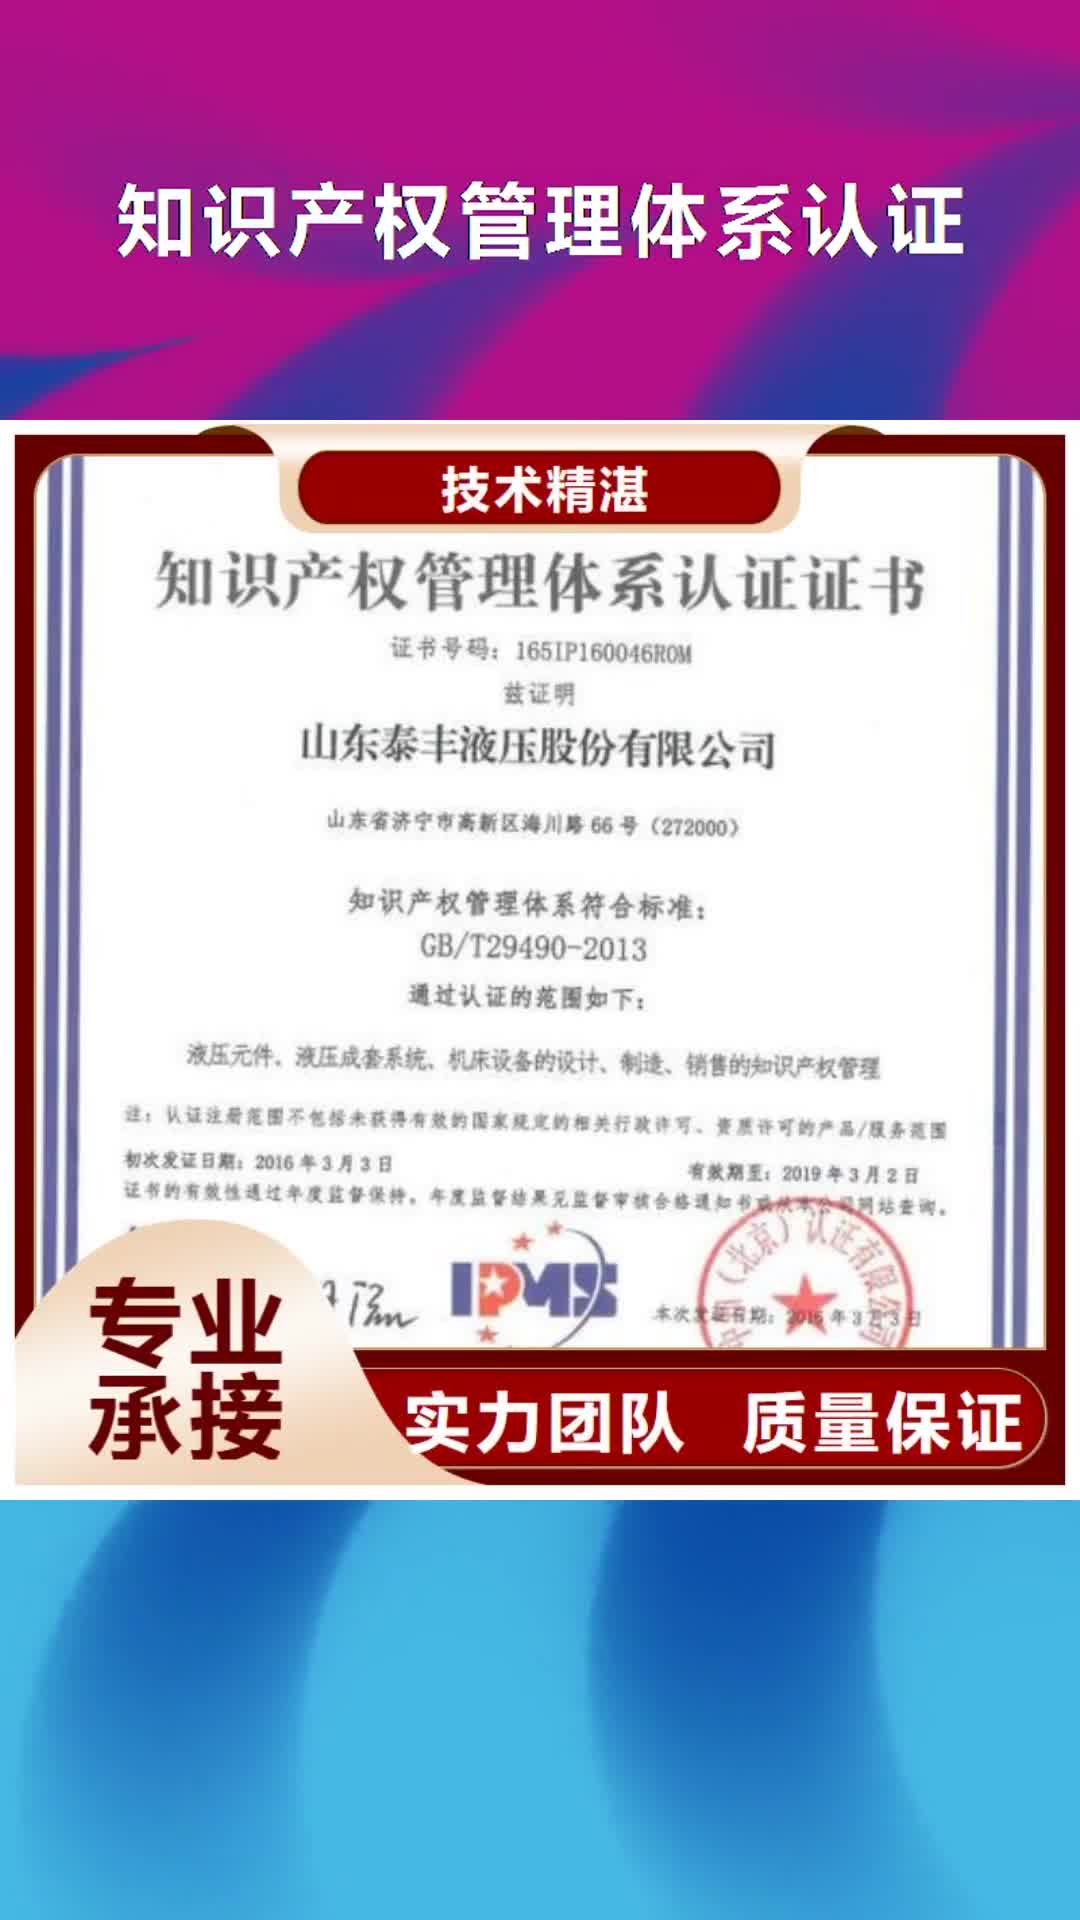 南京【知识产权管理体系认证】 知识产权认证/GB29490欢迎合作